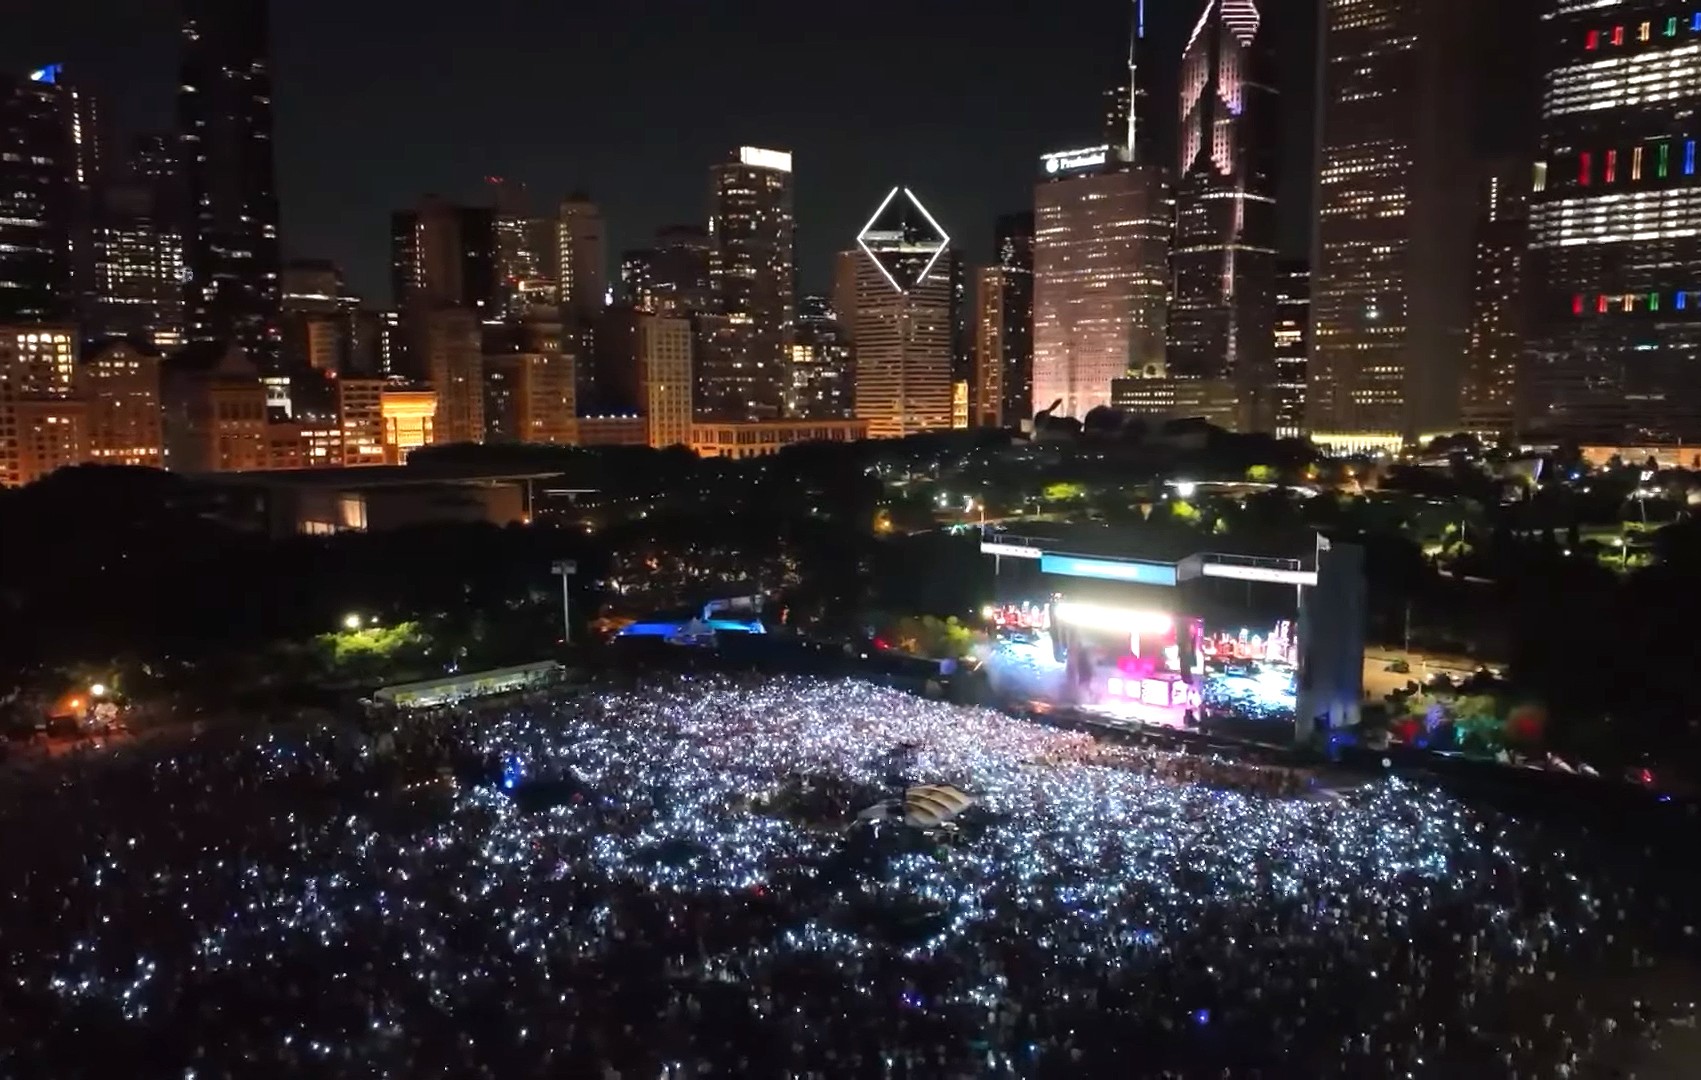 O festival Lollapalooza Chicago 2022 foi realizado entre os dias 28 e 31 de julho (Foto: reprodução)